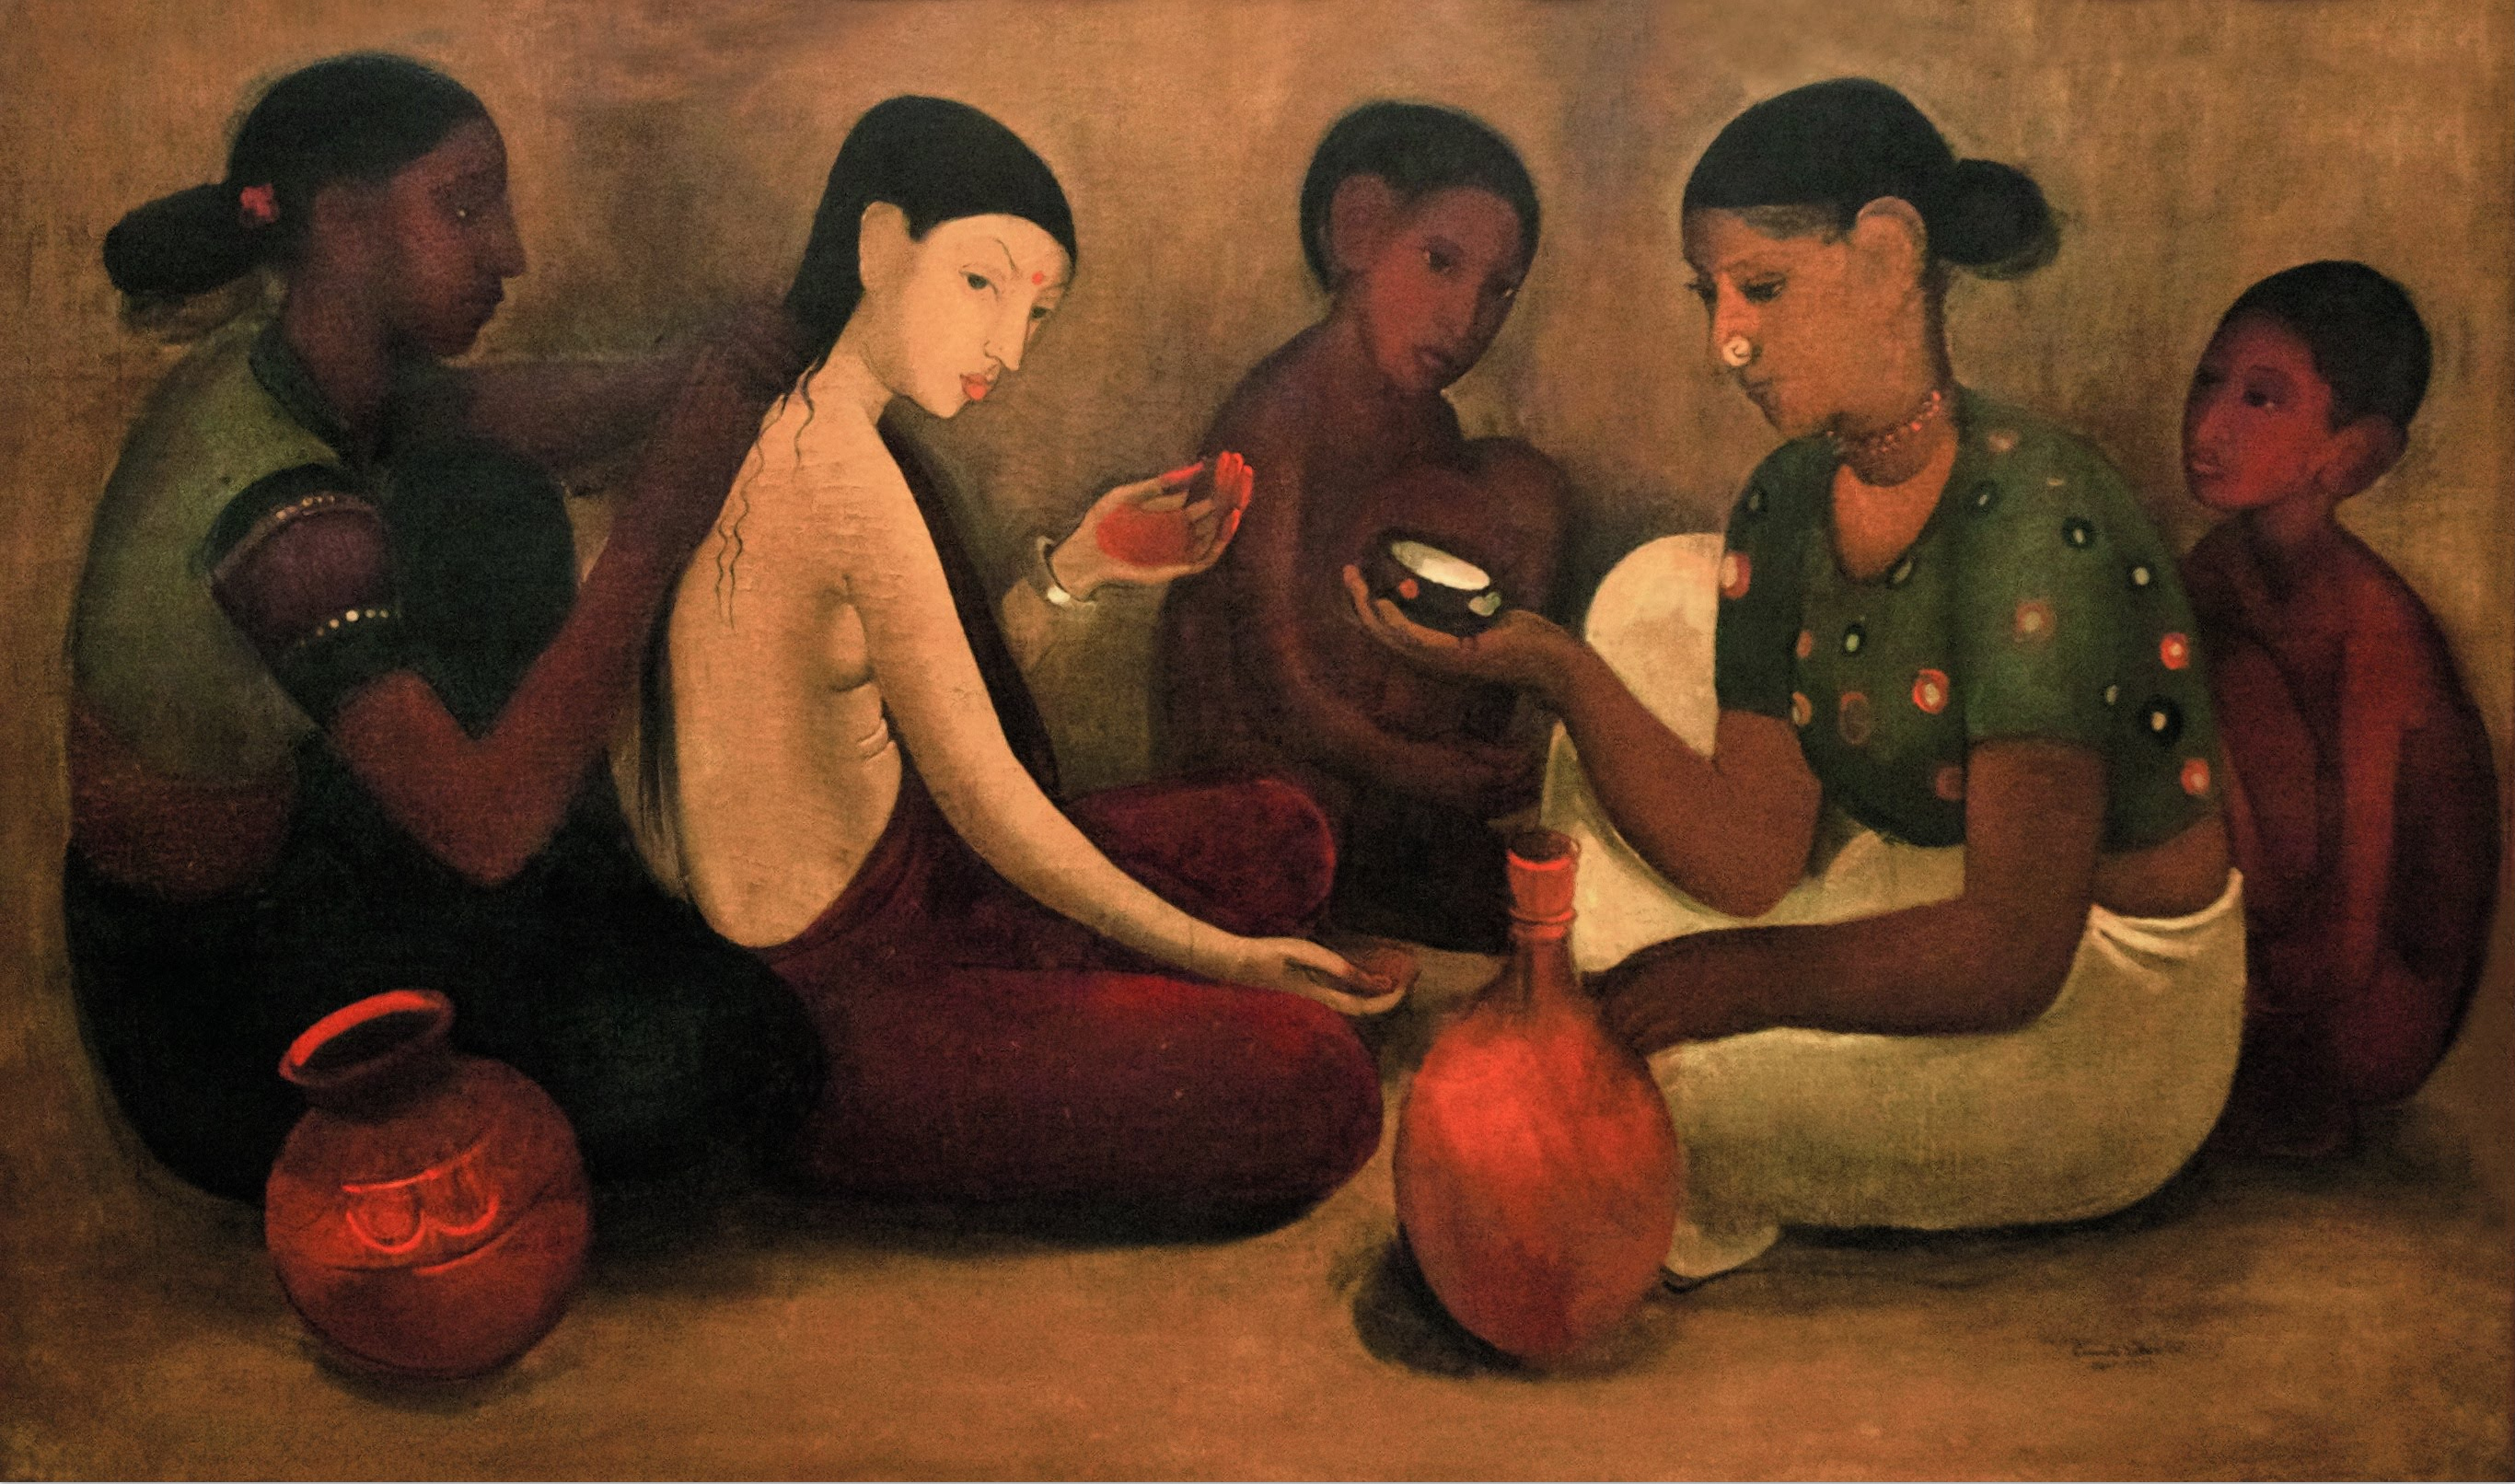 অমৃতা শের-গিলের আঁকা ছবি,ব্রাইডস টয়লেট (১৯৩৭)